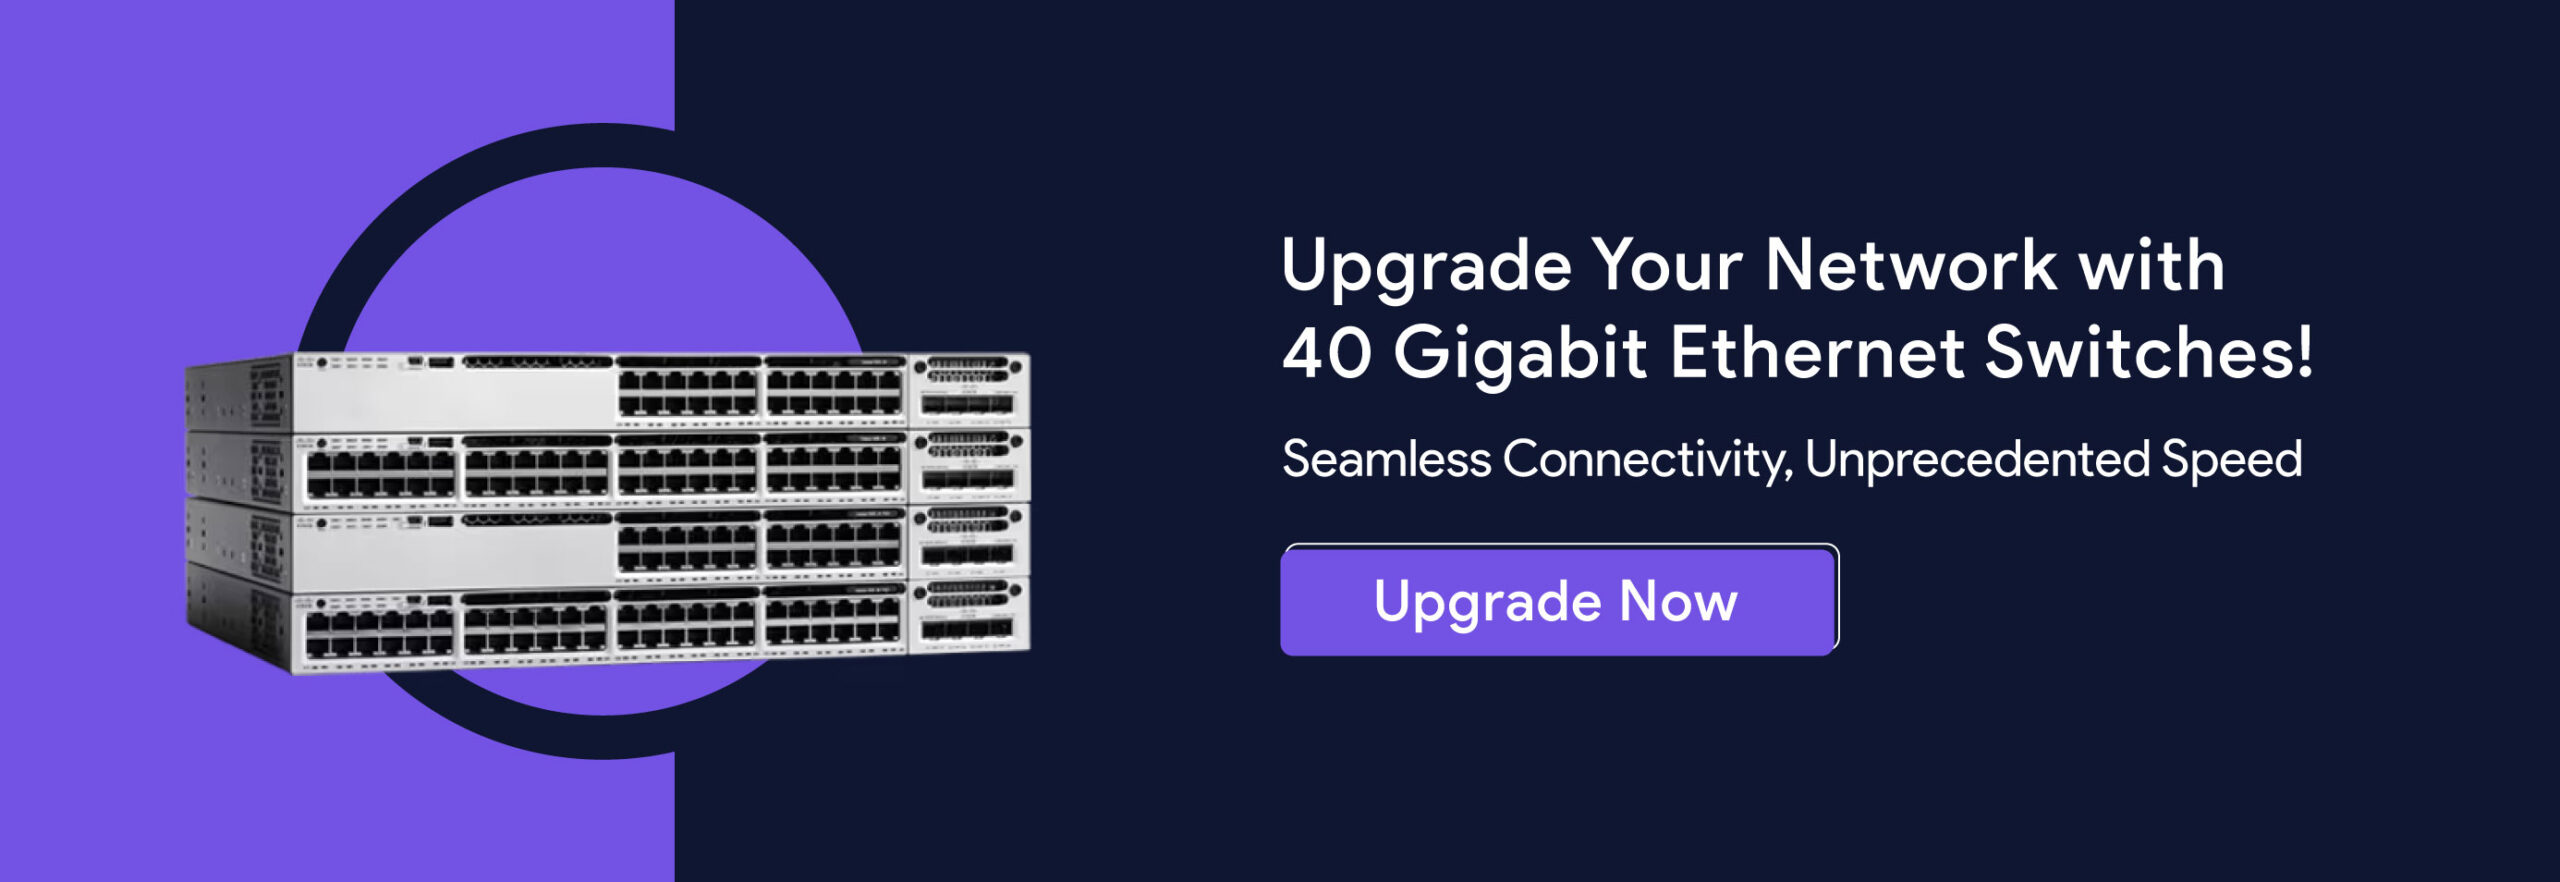 40-Gigabit-Ethernet-Switches